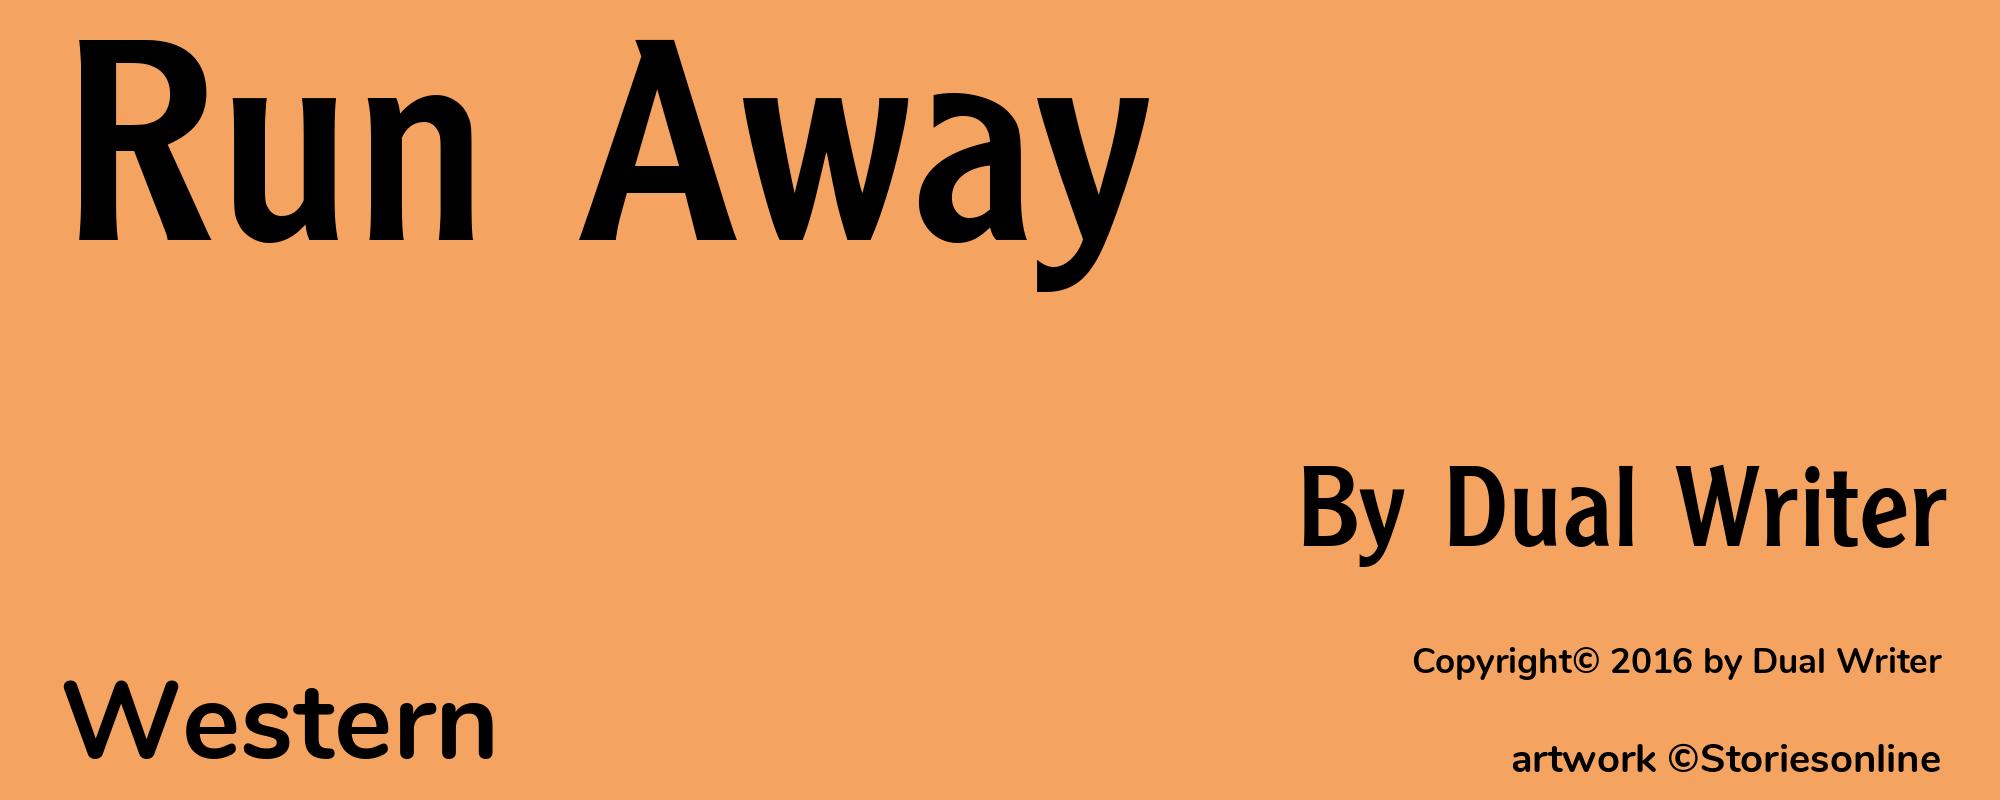 Run Away - Cover